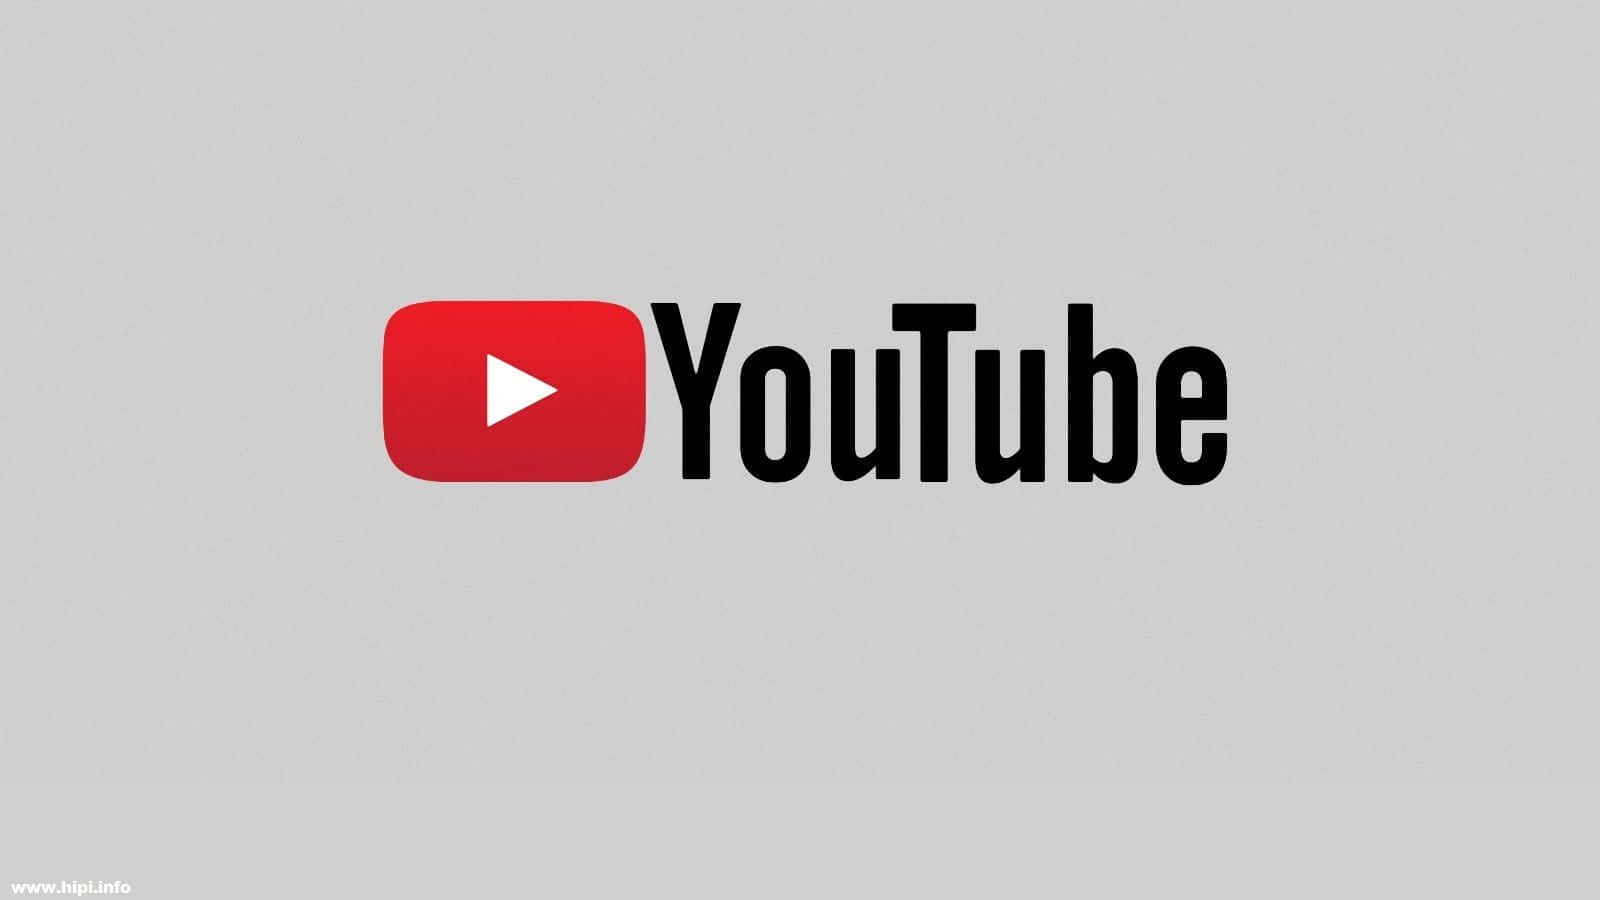 Logode Youtube En Un Fondo Negro.